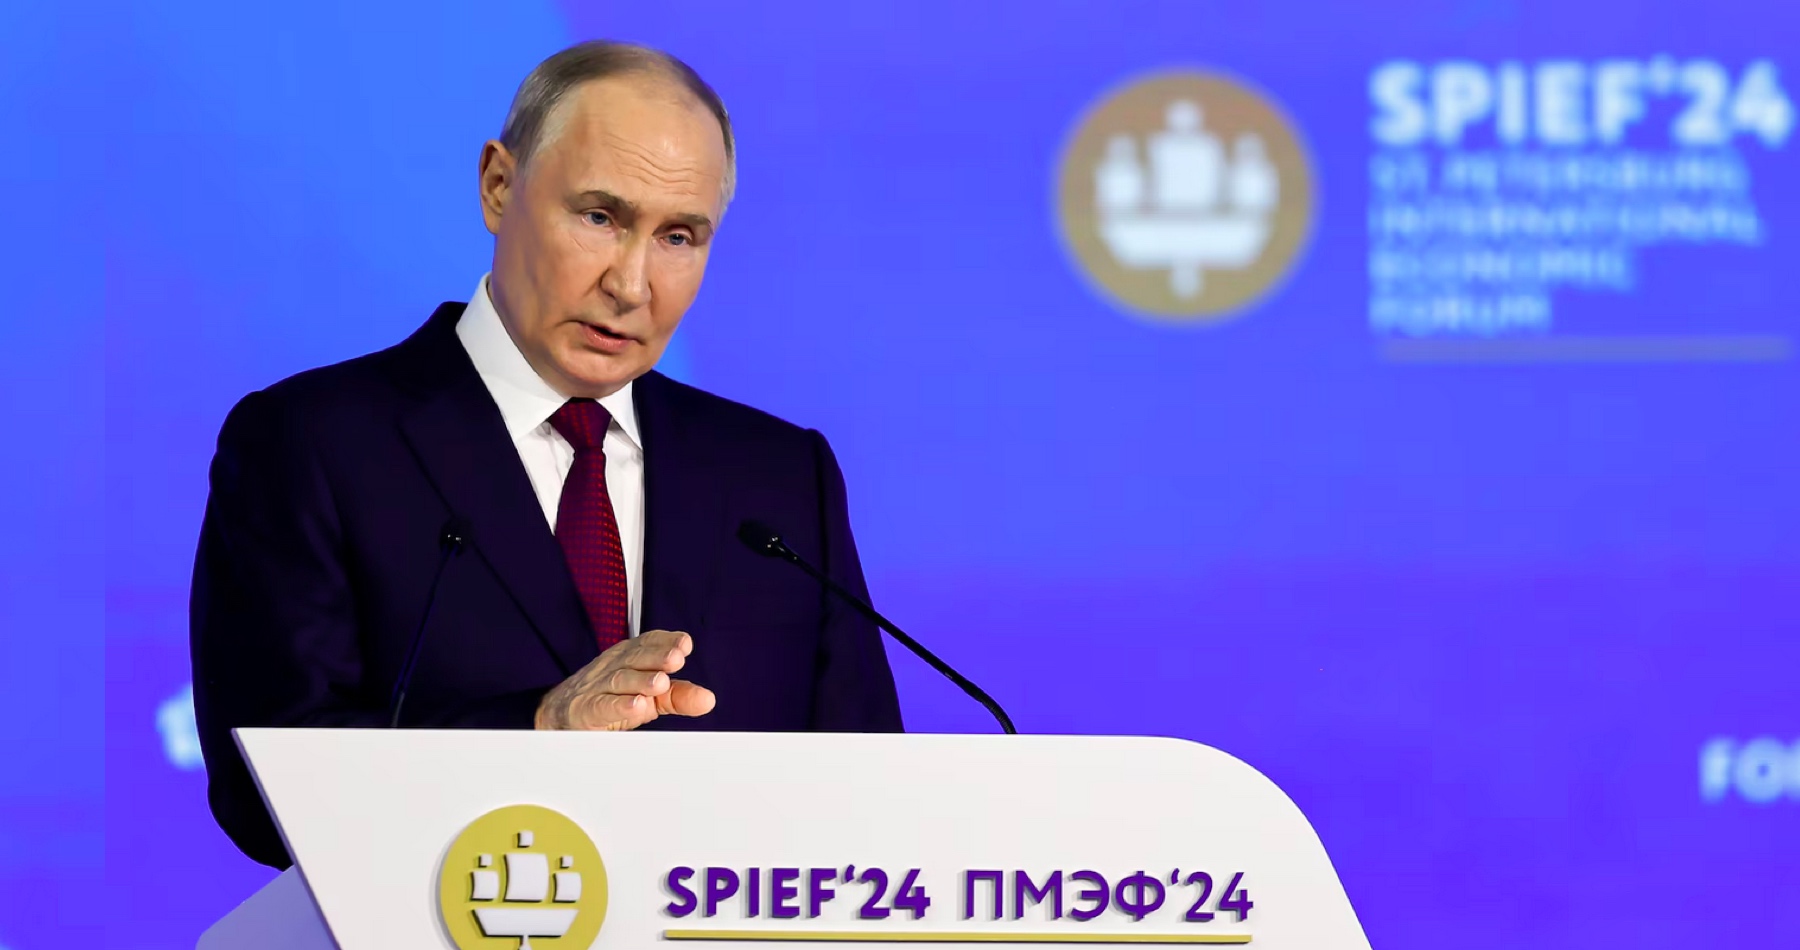 VIDEO: Putinov prejav o ruskej ekonomike na výročnom zasadnutí Petrohradského medzinárodného ekonomického fóra: Národná hrdosť, technologická suverenita, nárast investícií, rekordne nízka nezamestnanosť & nižšie dane